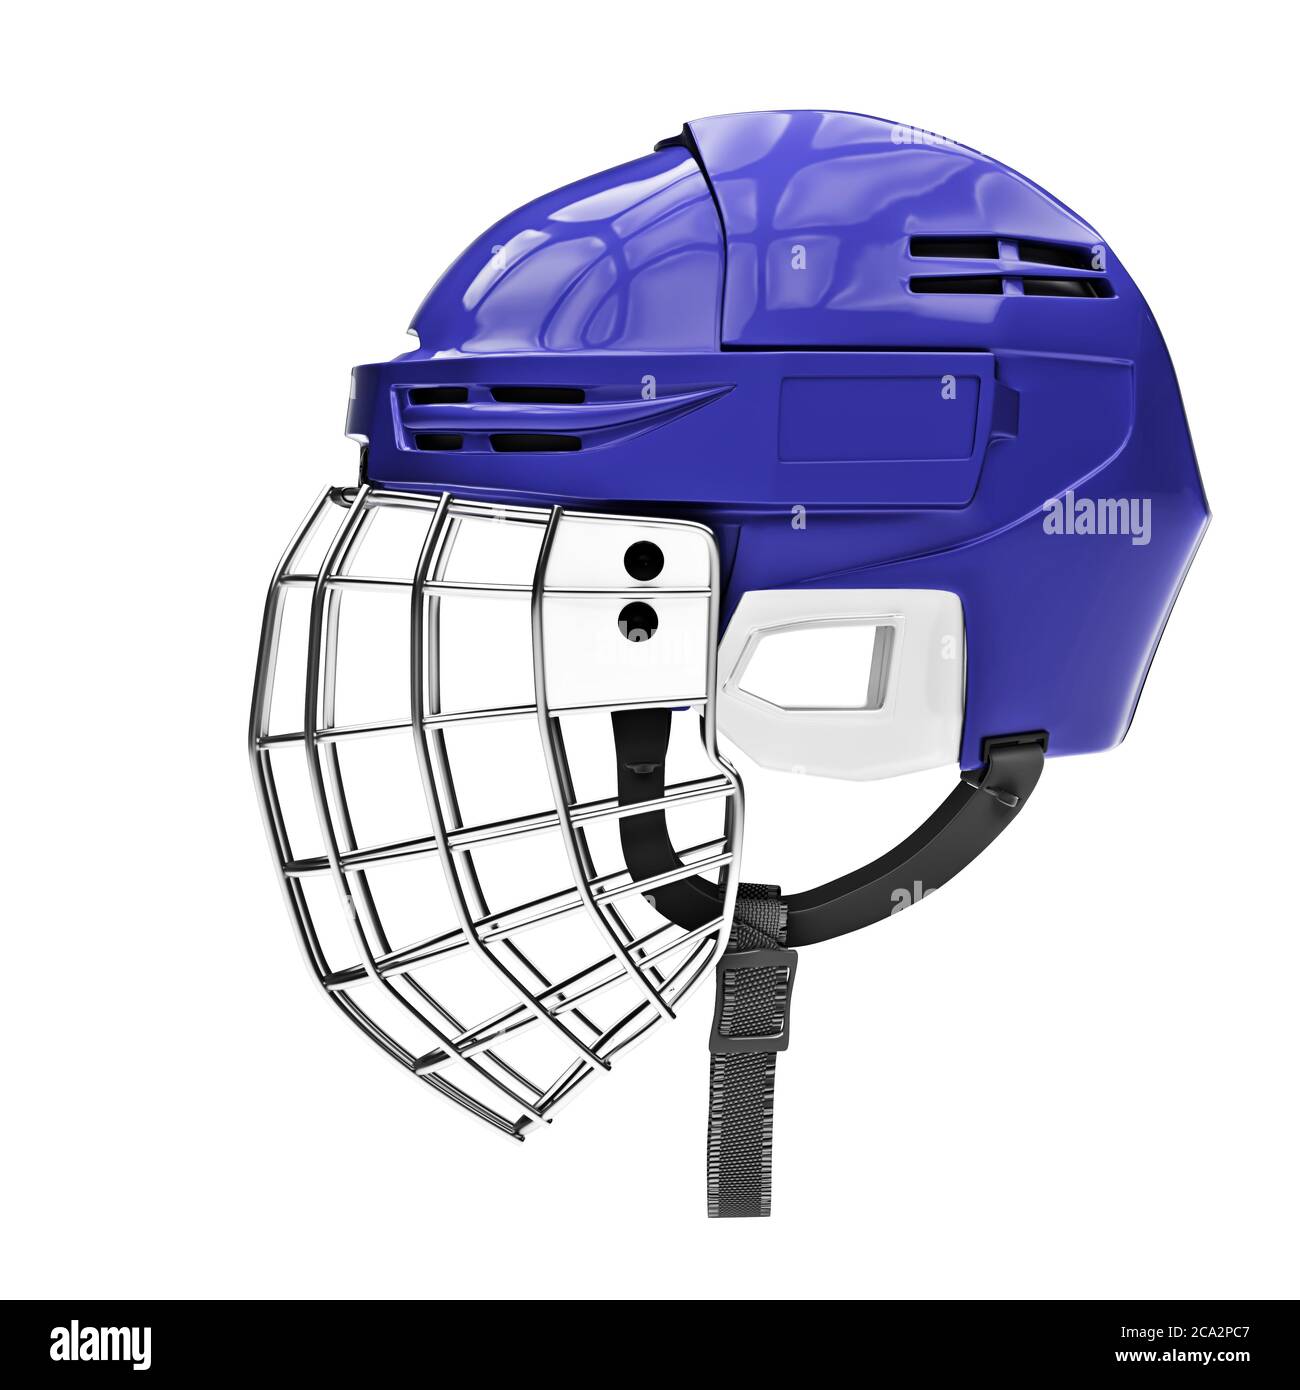 Klassischer Eishockey-Helm mit Facemask aus Metall Stockfotografie - Alamy